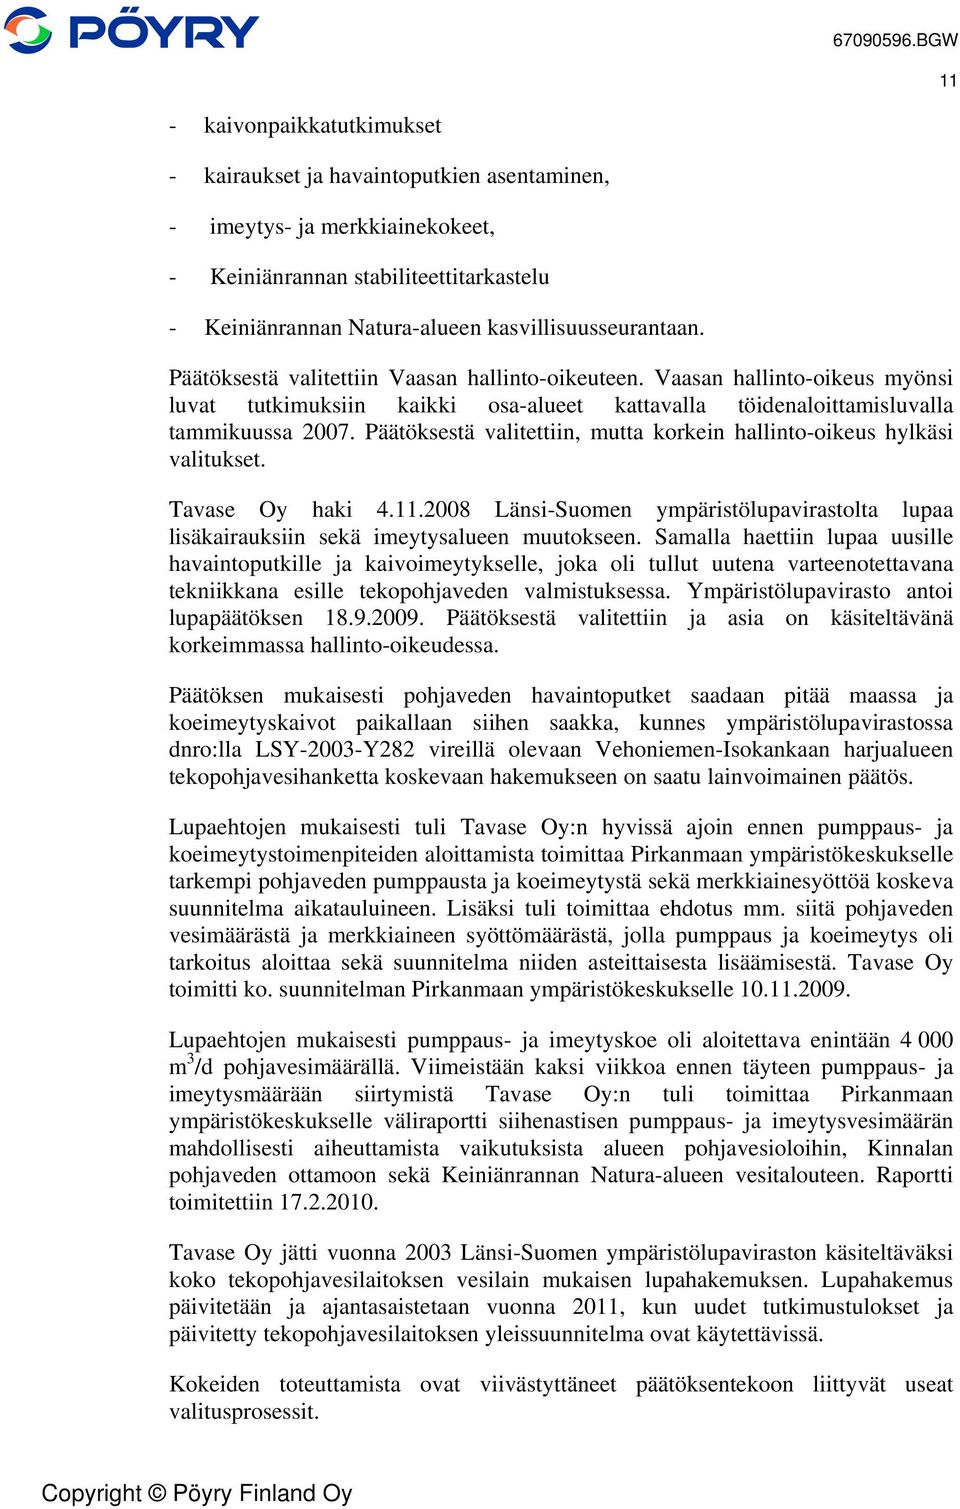 Päätöksestä valitettiin, mutta korkein hallinto-oikeus hylkäsi valitukset. Tavase Oy haki 4.11.2008 Länsi-Suomen ympäristölupavirastolta lupaa lisäkairauksiin sekä imeytysalueen muutokseen.